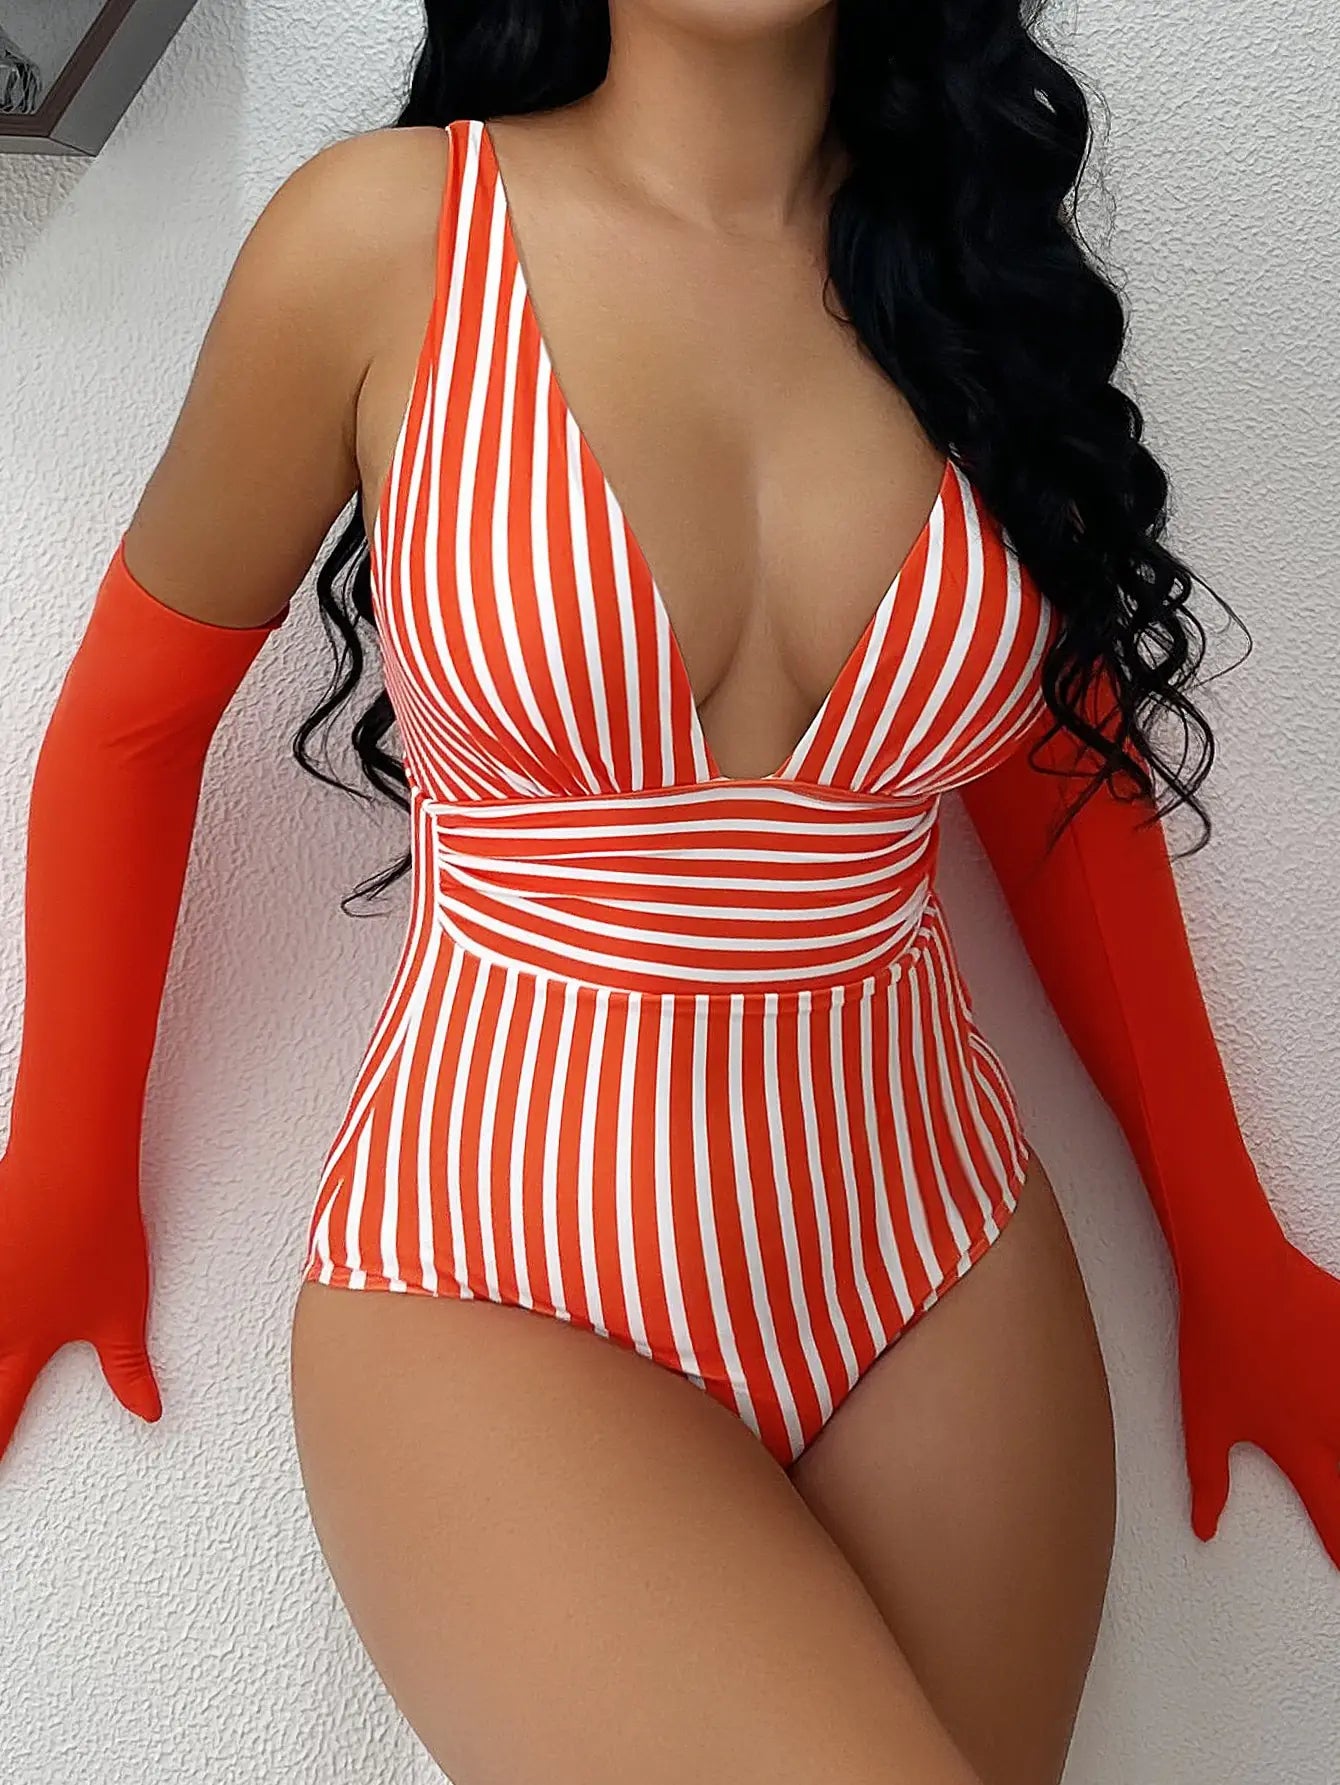 Striped One Piece Swimsuit Vintage Swimwear Women V-neck Bathing Swimming Suit Female Summer Beachwear Bodysuit ShopOnlyDeal